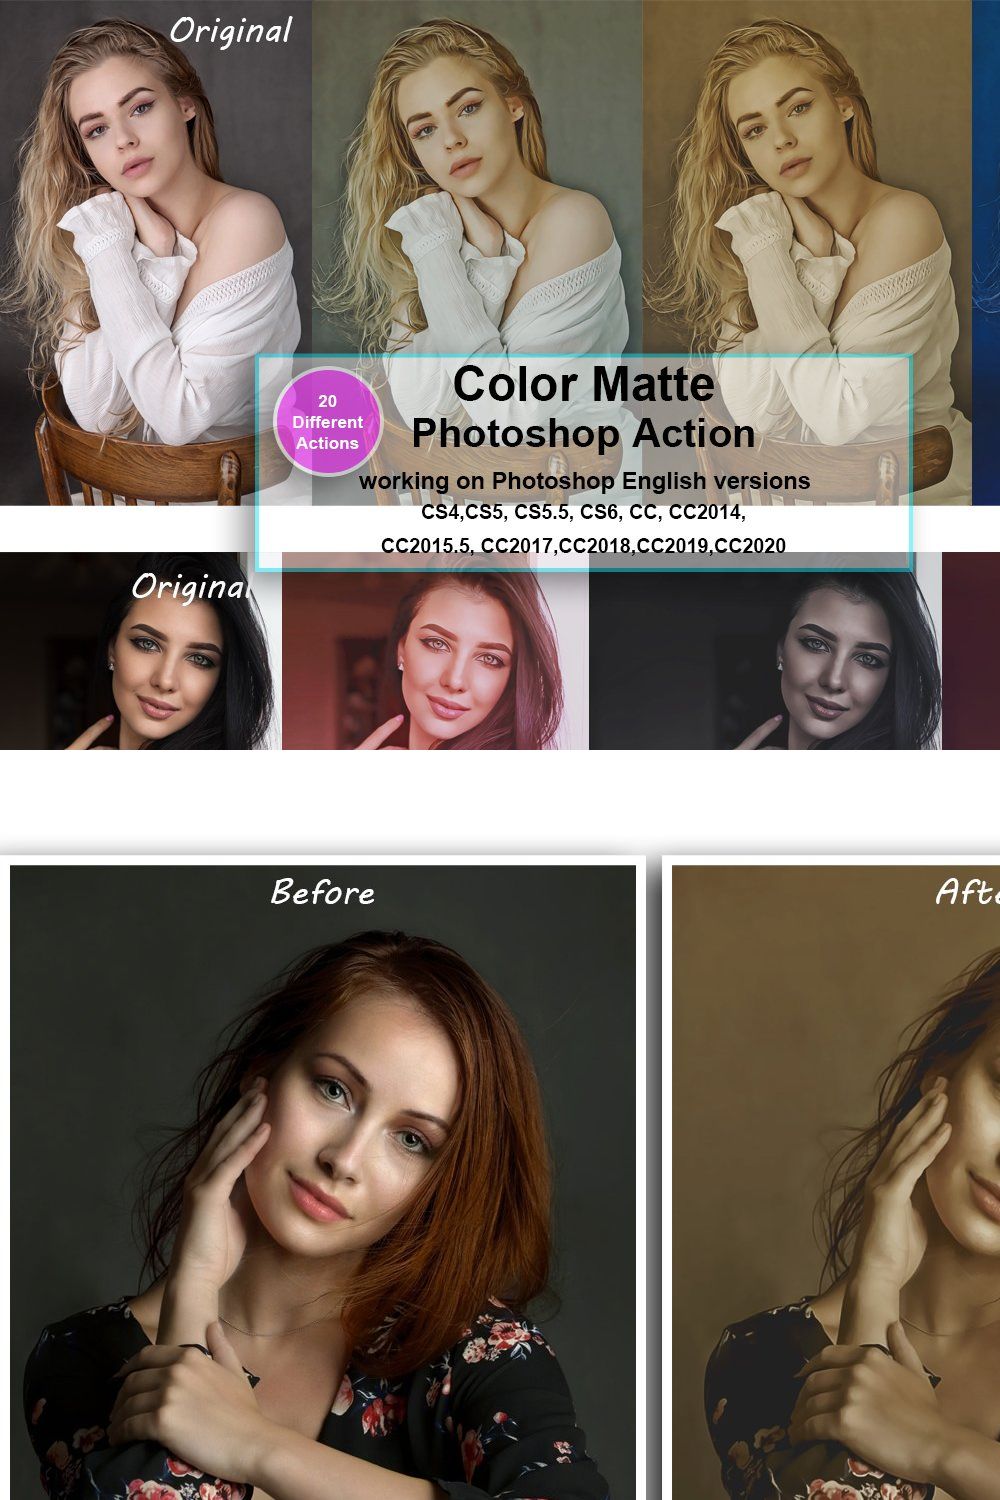 Color Matte Photoshop Action pinterest preview image.